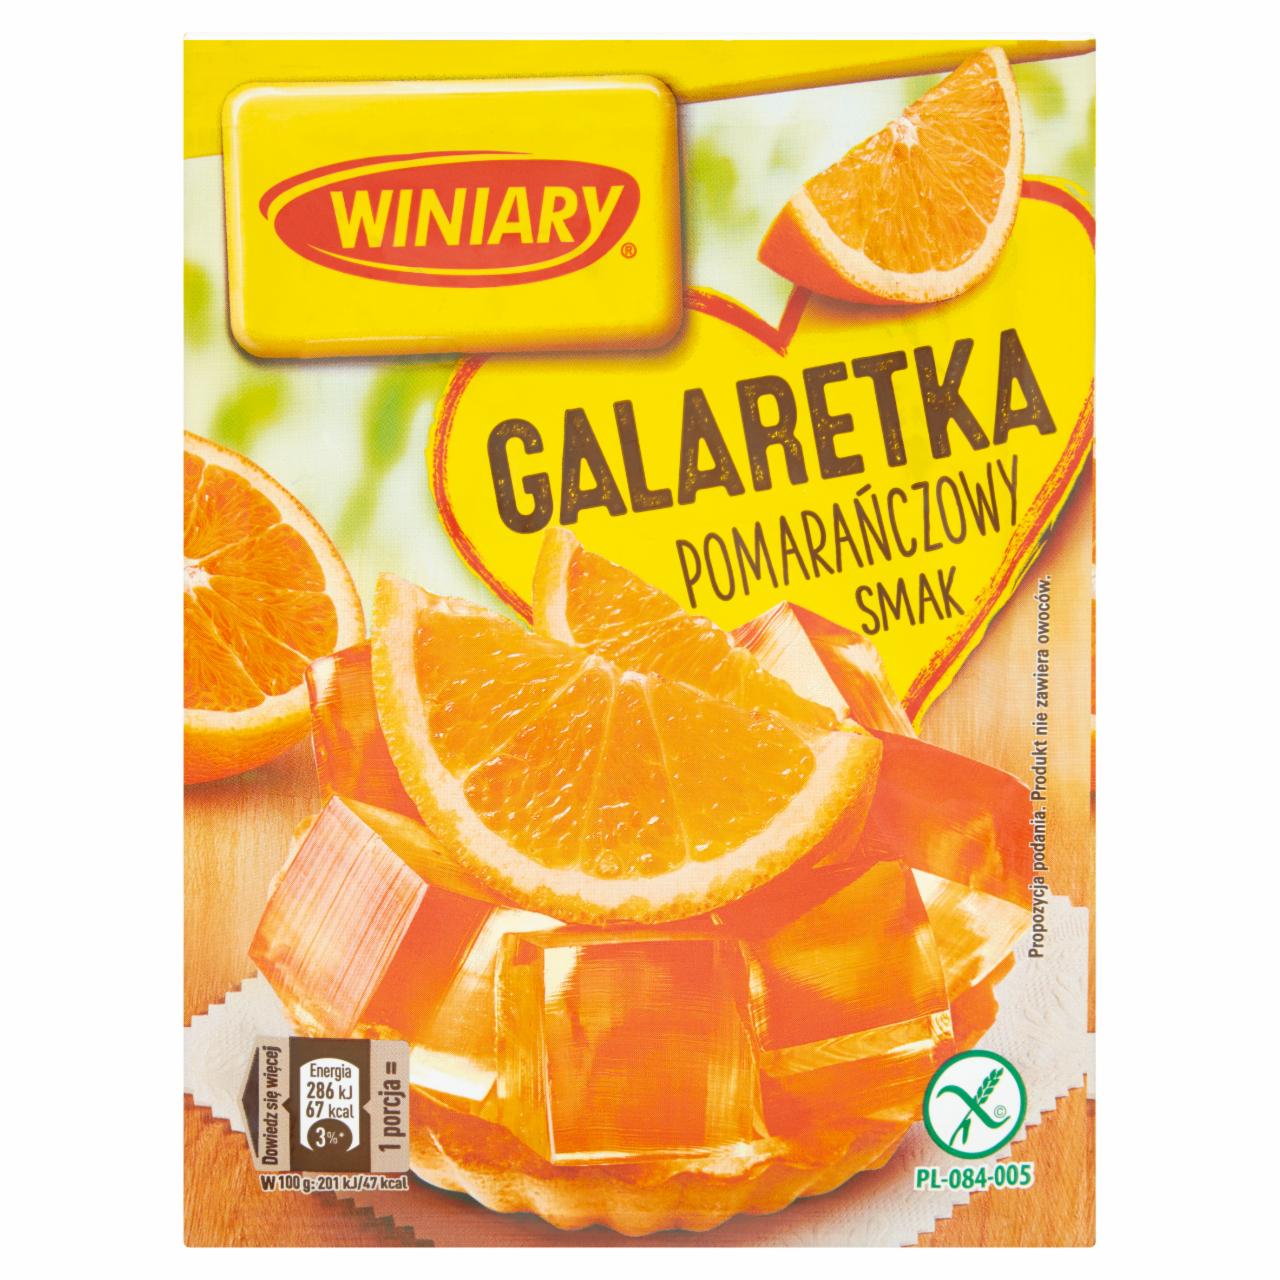 Zdjęcia - Galaretka pomarańczowy smak Winiary